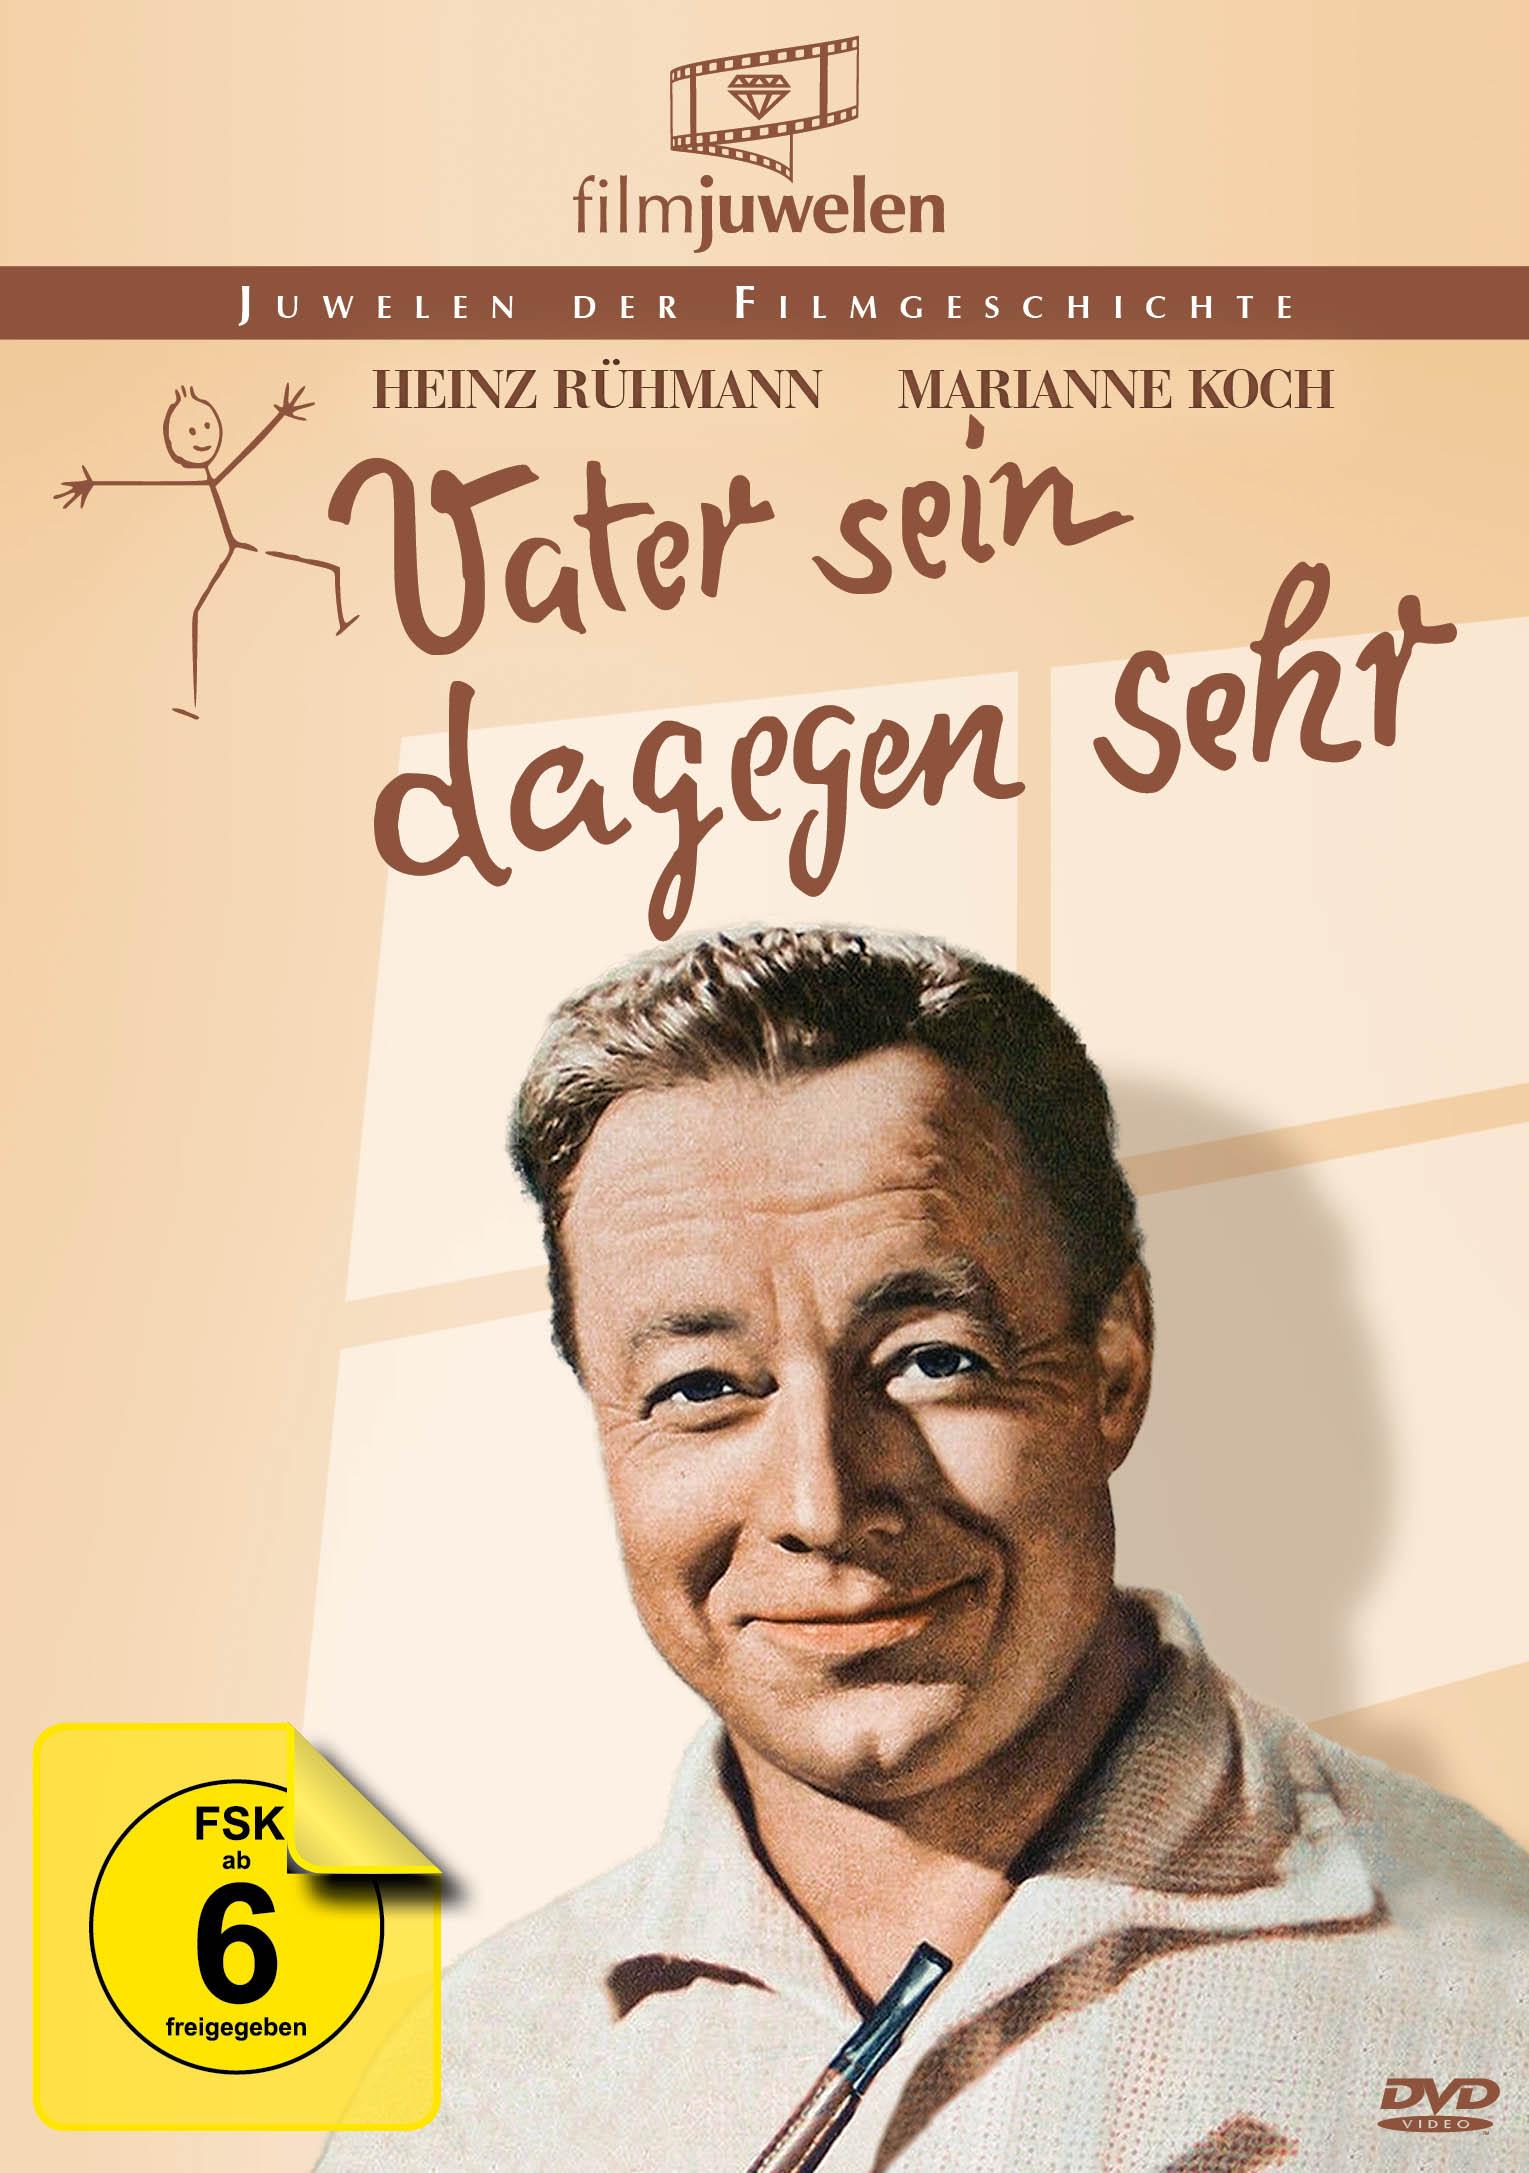 Heinz Rühmann - sehr sein dagegen DVD Edition Vater